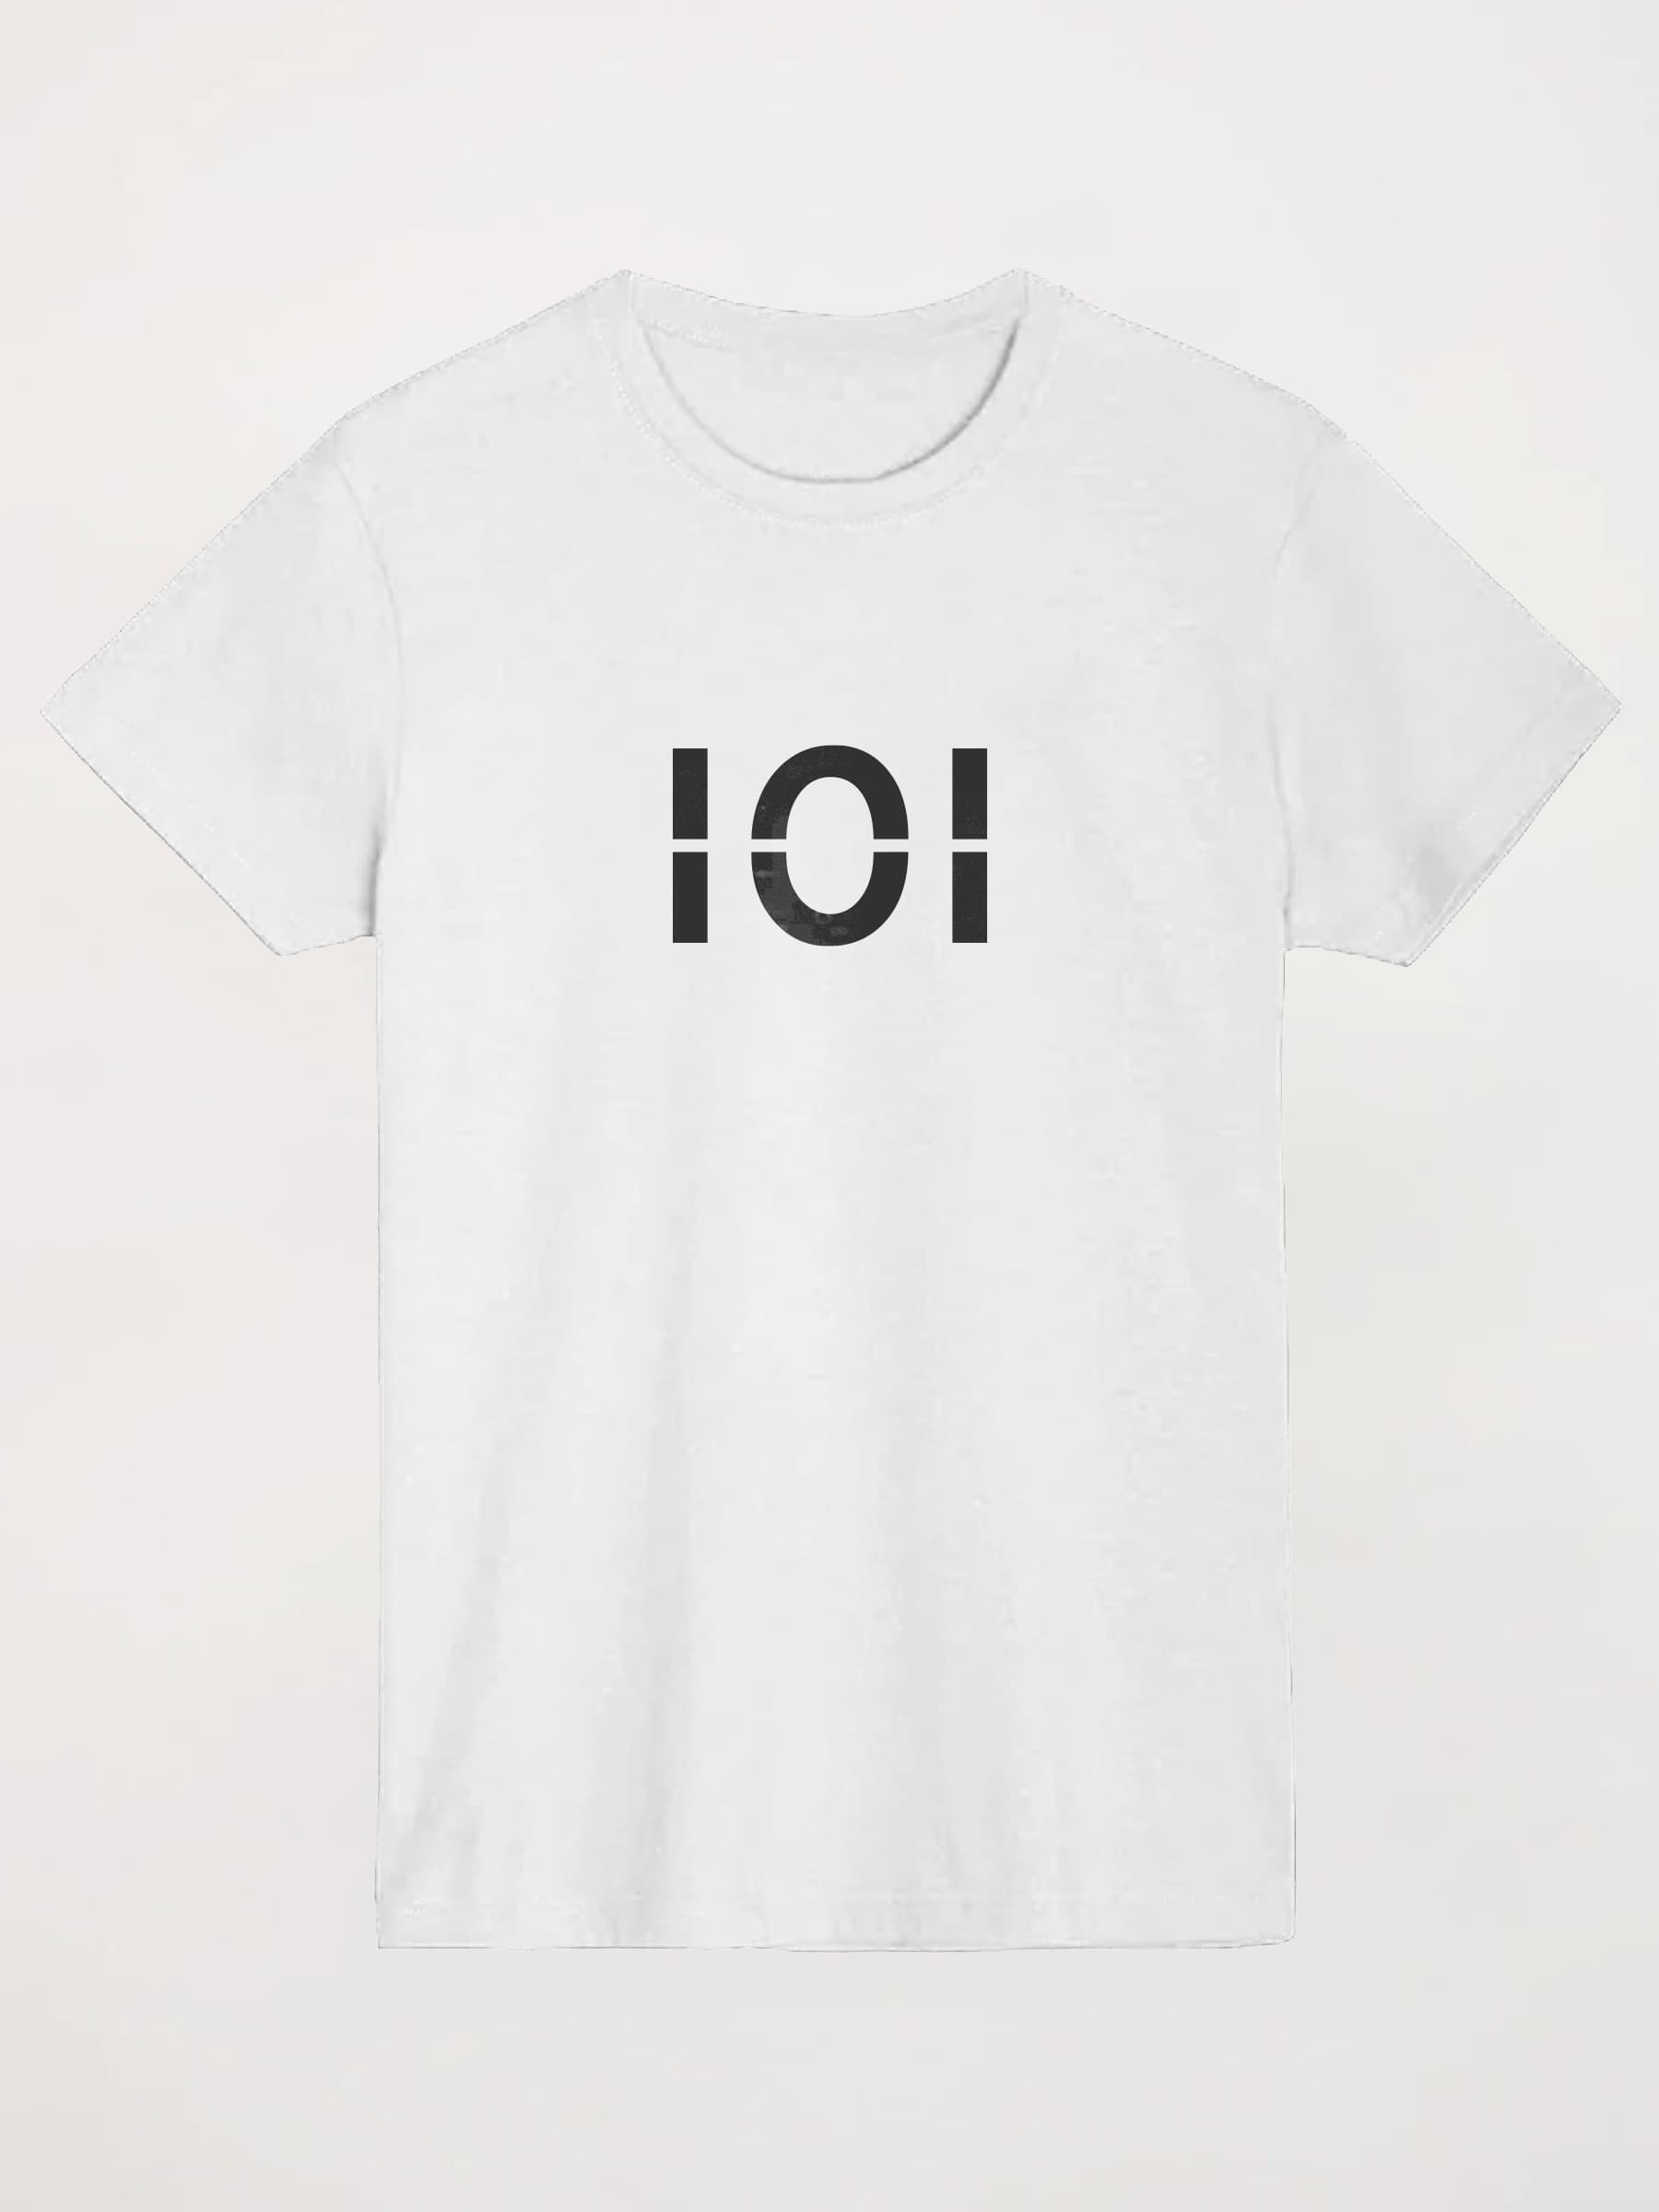 Camiseta 101